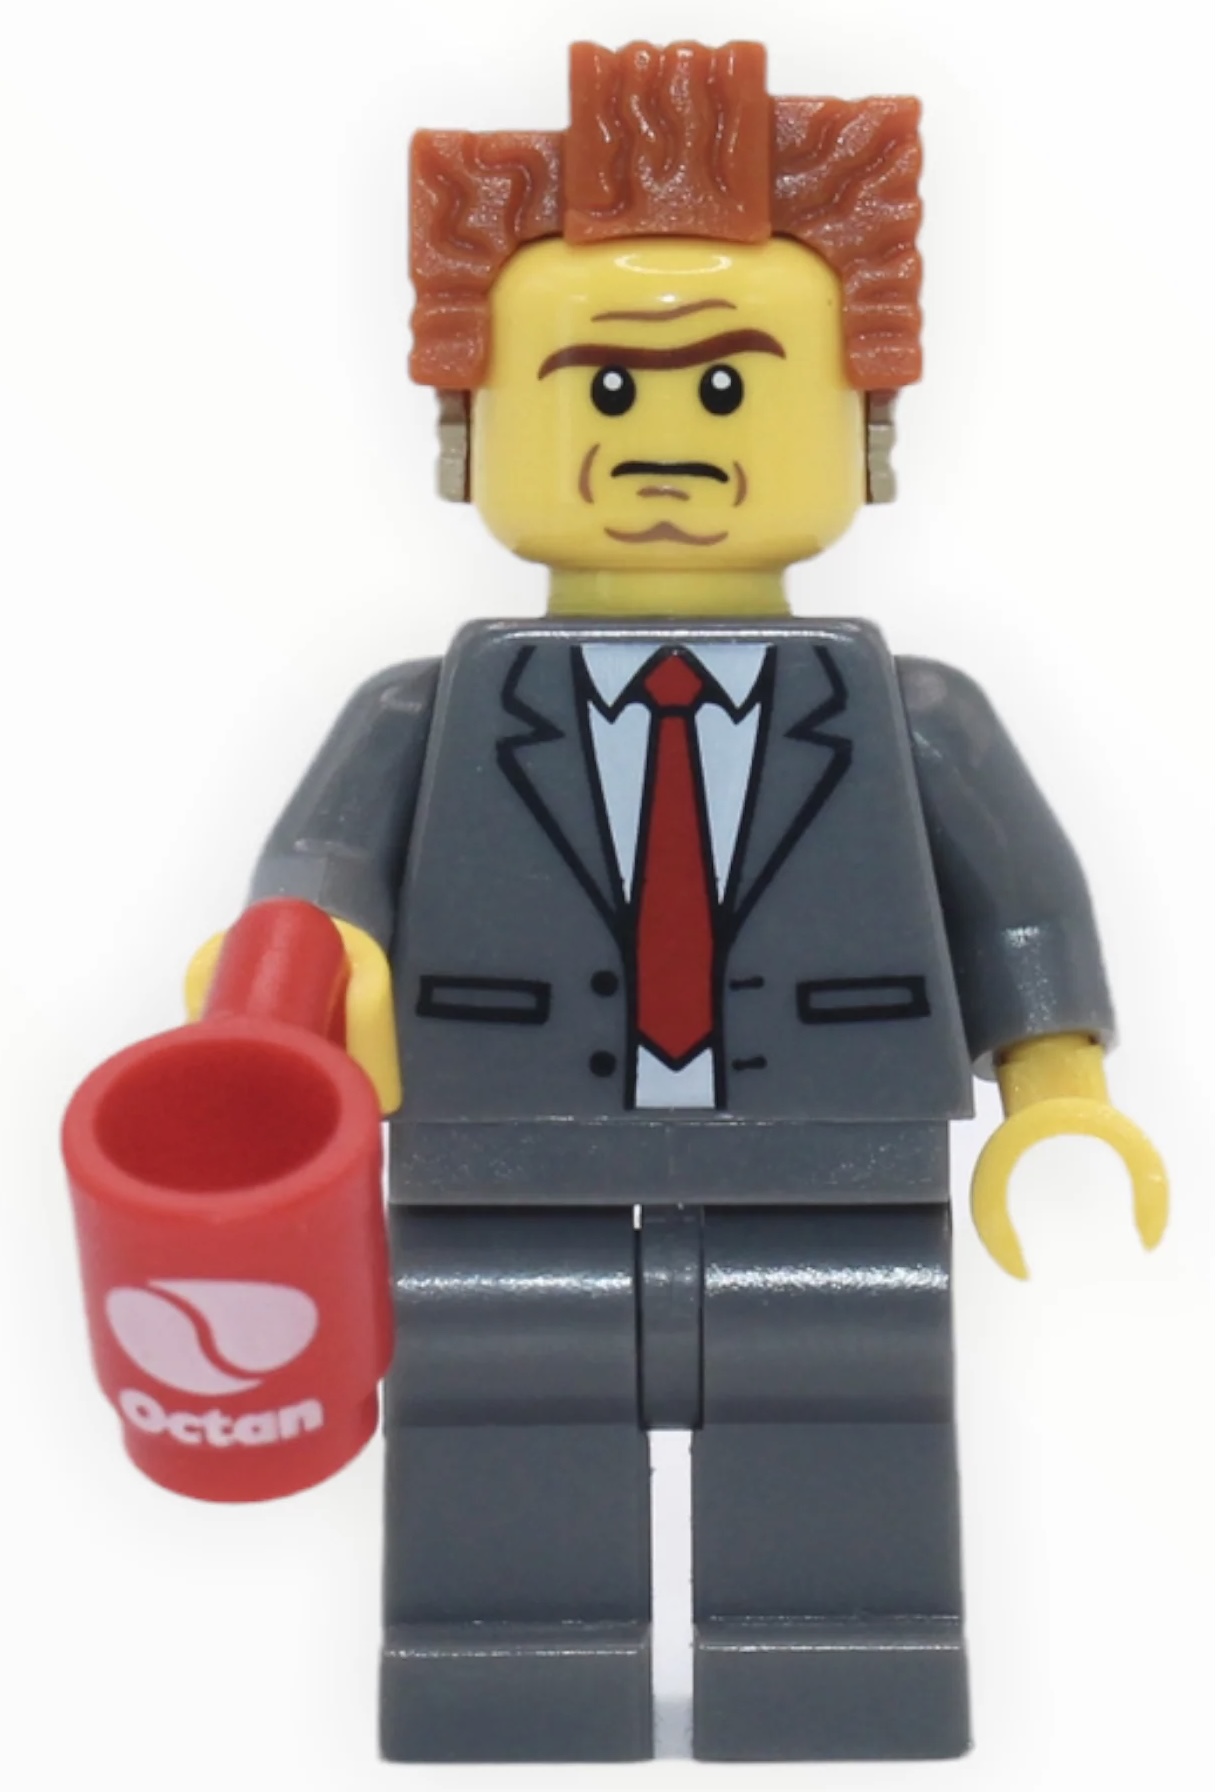 derefter Sæt tabellen op Regnskab LEGO President/Lord Business by Mr3210 on DeviantArt